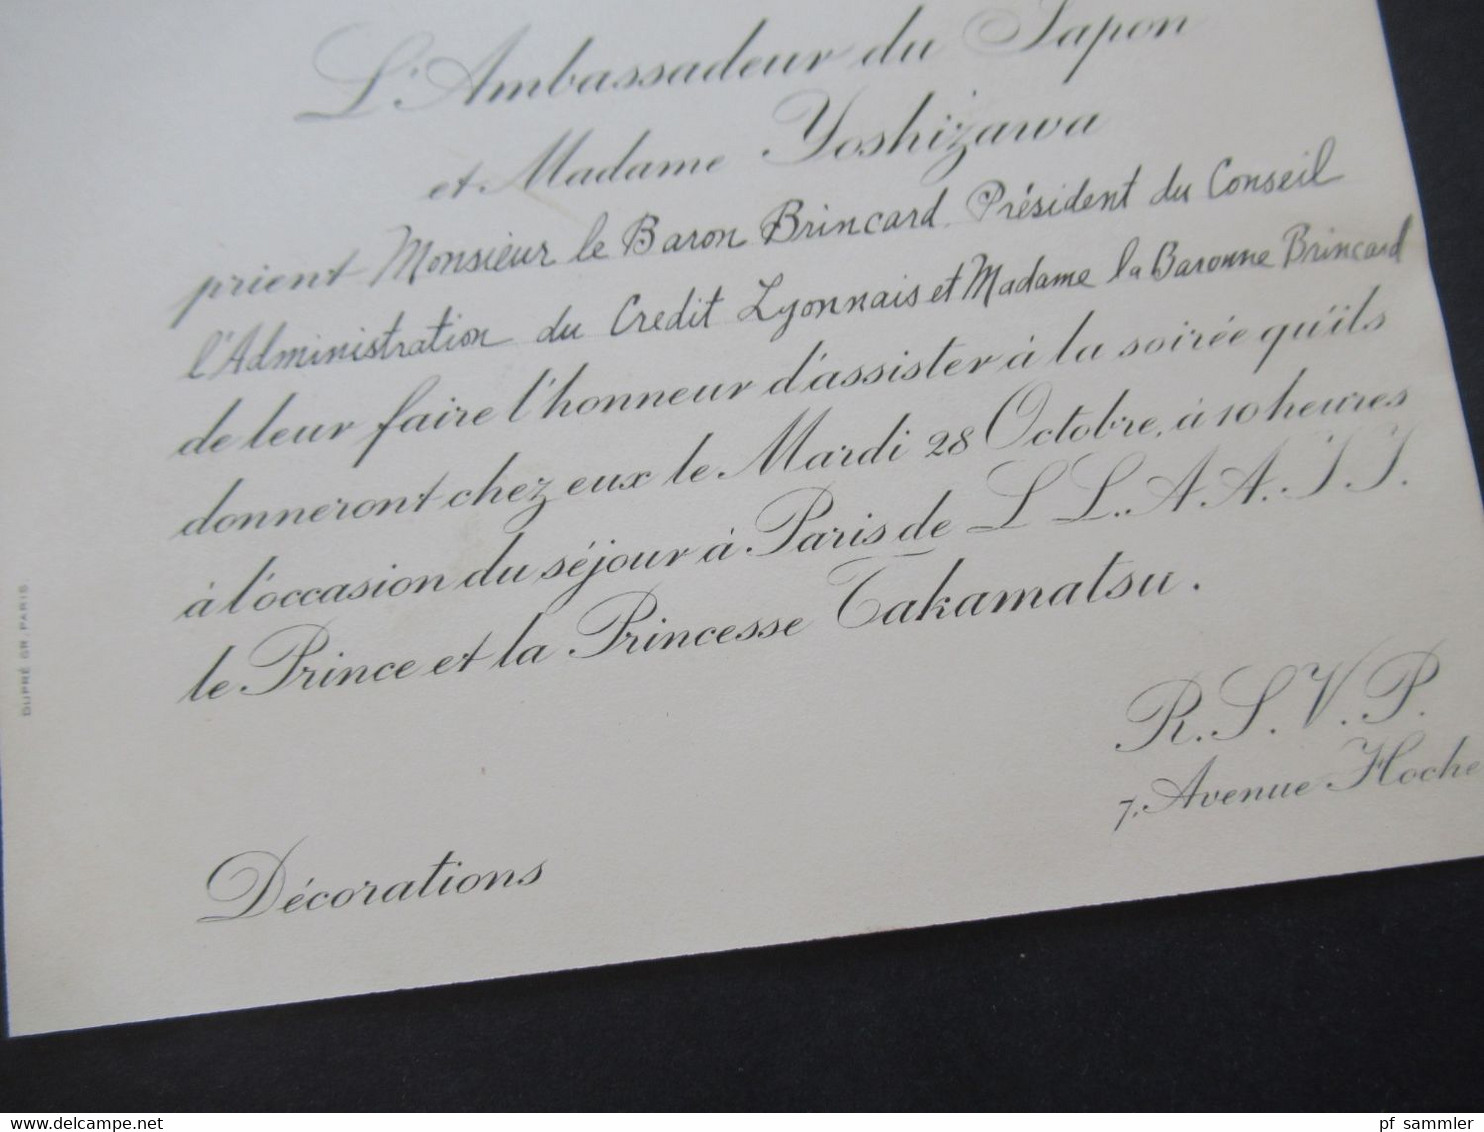 Frankreich 1930 Umschlag mit original Einladungskarte Ambassade Imperiale Du Japon Paris / Prince Takamatsu